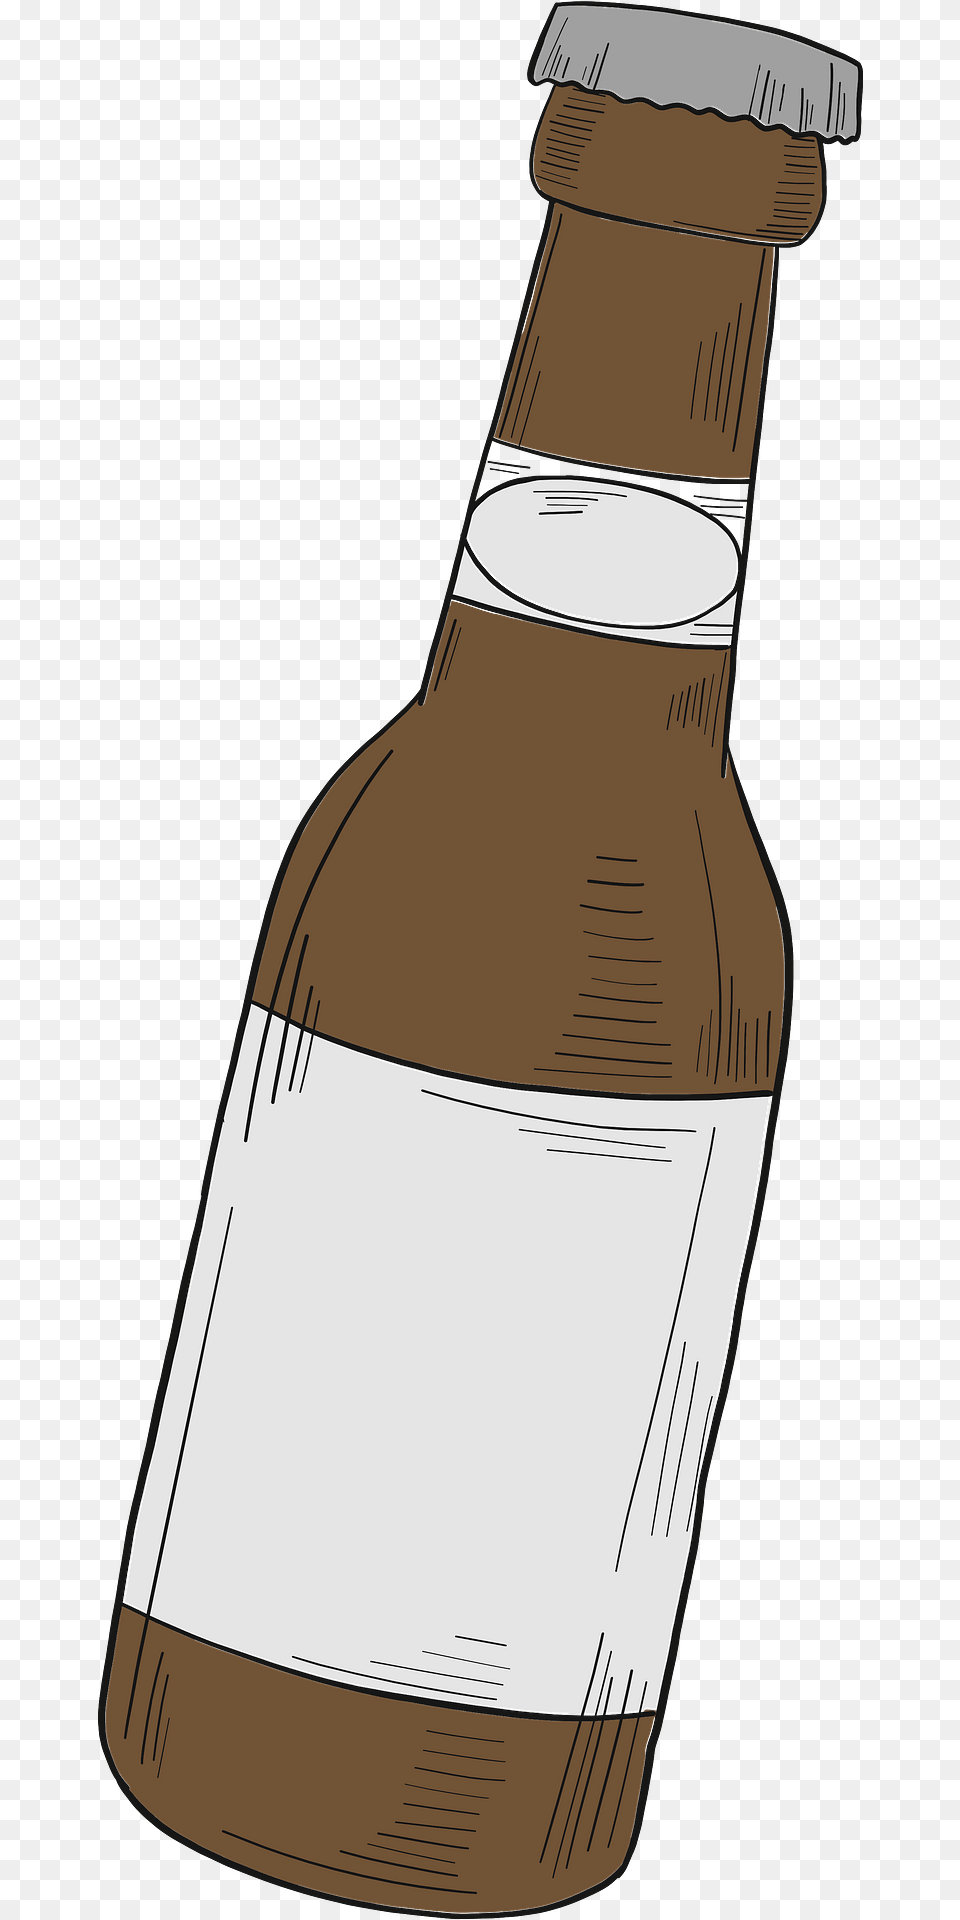 Beer Bottle Clipart, Alcohol, Beer Bottle, Beverage, Liquor Free Png